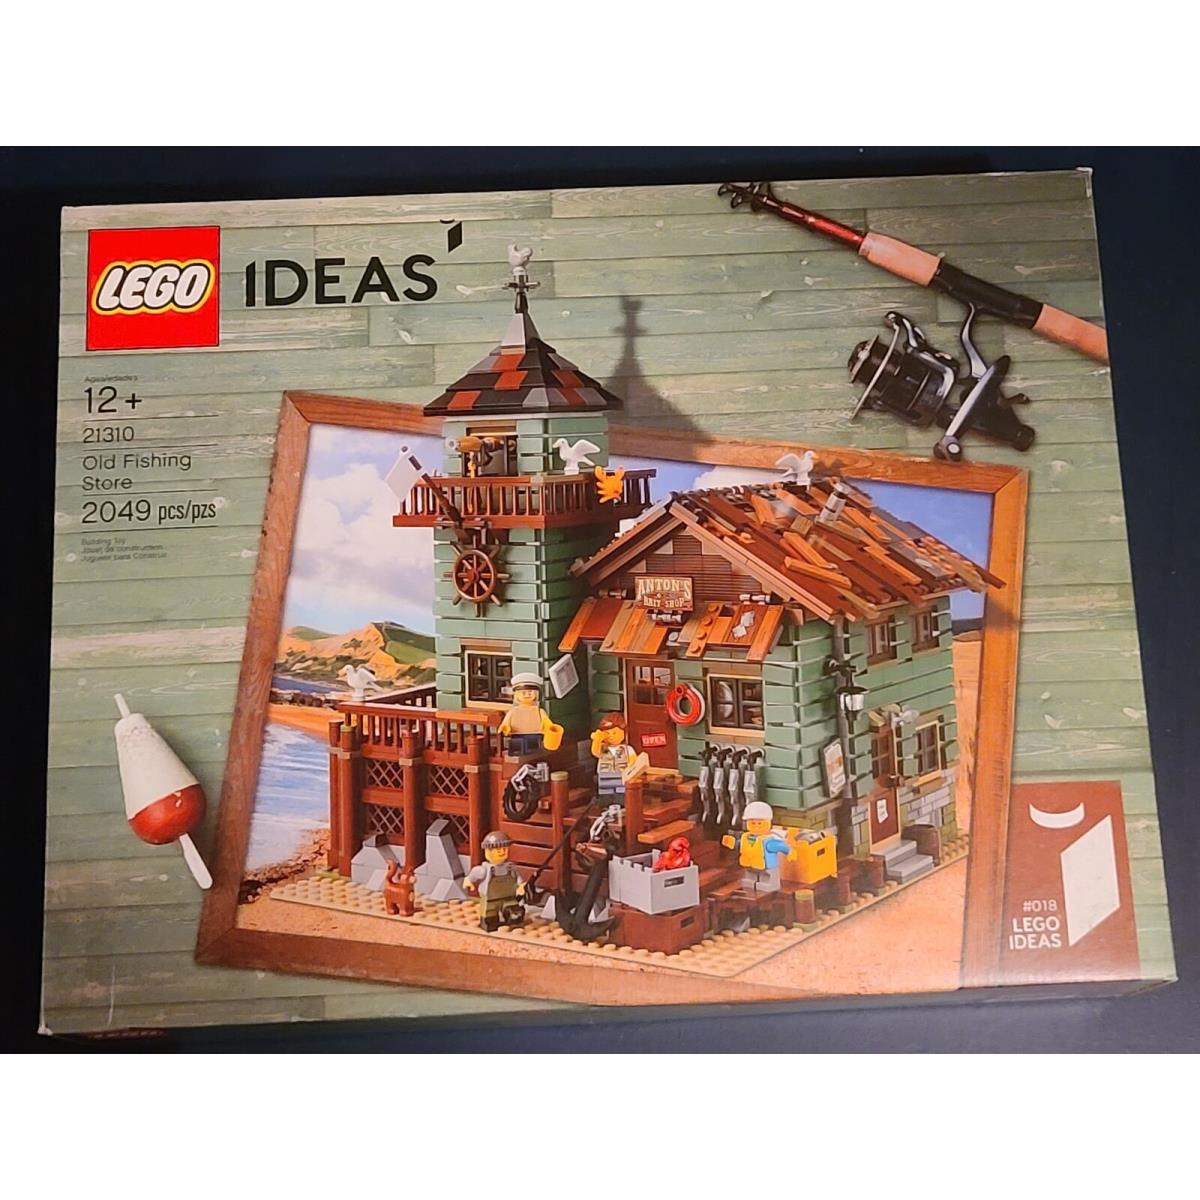 Lego 21310 Ideas Old Fishing Store Set